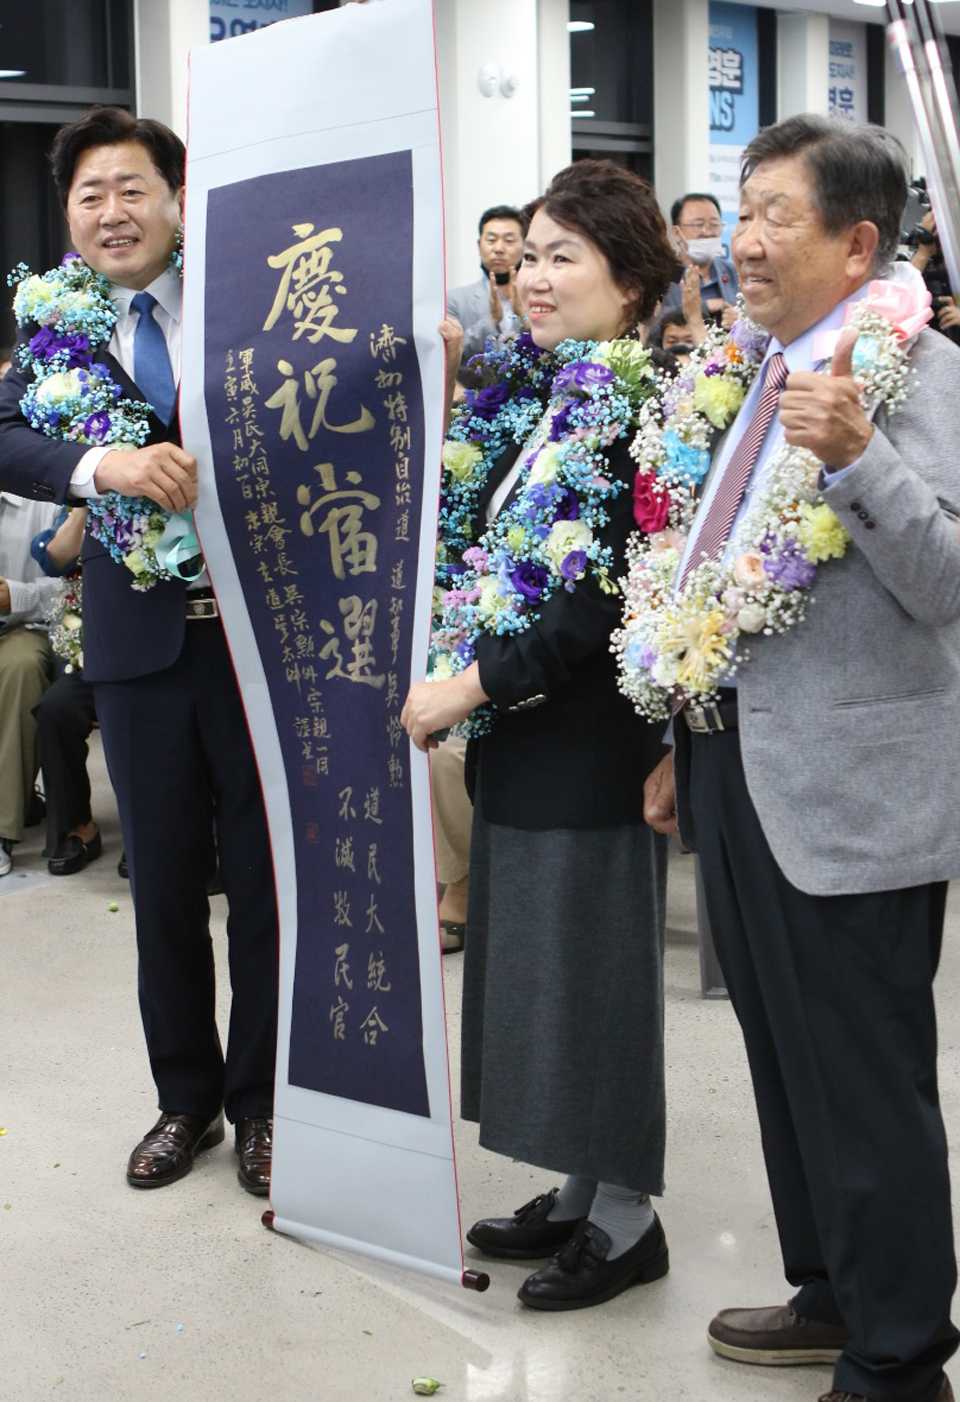 오영훈 제주도지사 당선인과 부인 박선희씨가 제주시 선거사무소에서 꽃목걸이를 걸고 환하게 웃고 있다.